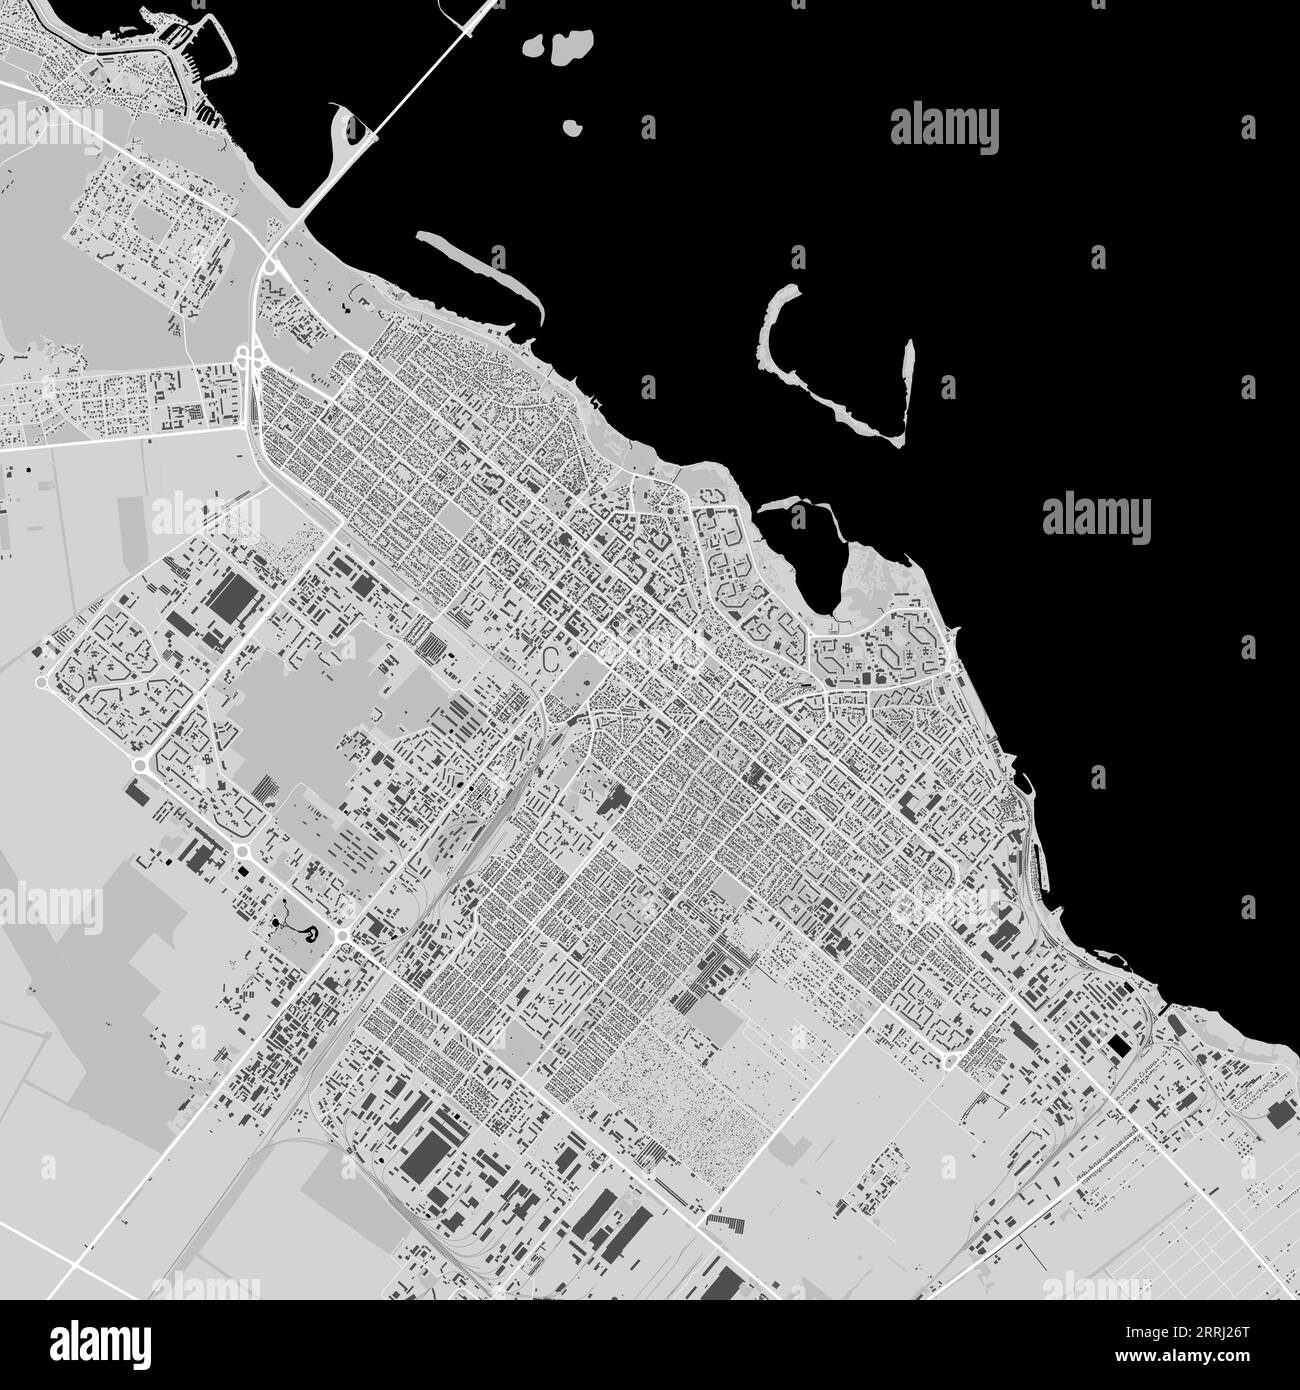 Carte de Cherkasy ville, Ukraine. Affiche urbaine en noir et blanc. Image de la carte routière avec vue de la zone urbaine. Illustration de Vecteur